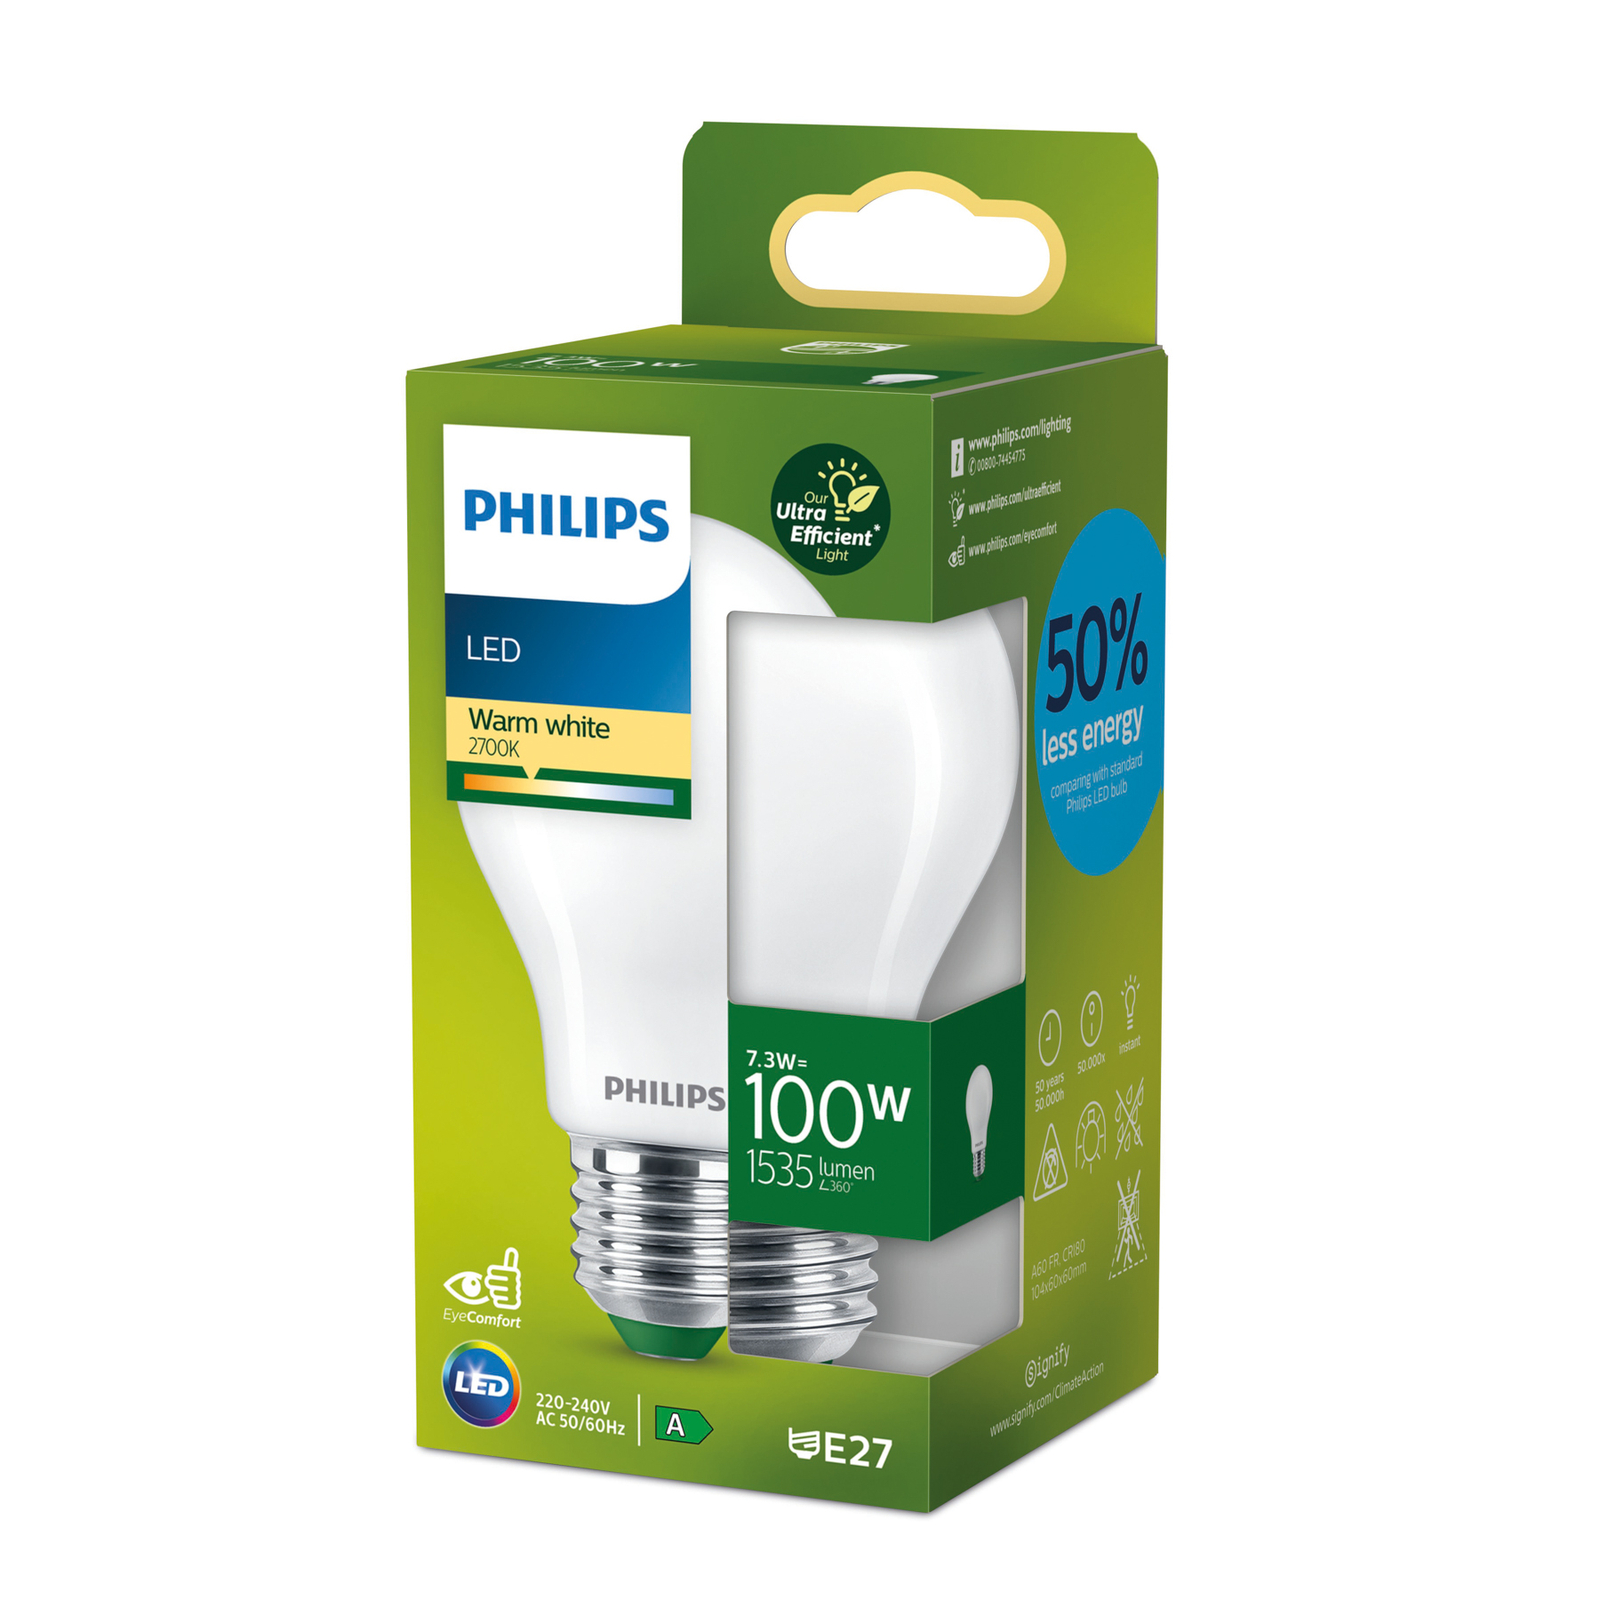 Philips E27 LED žiarovka A60 7,3W 1535lm 2700K mat